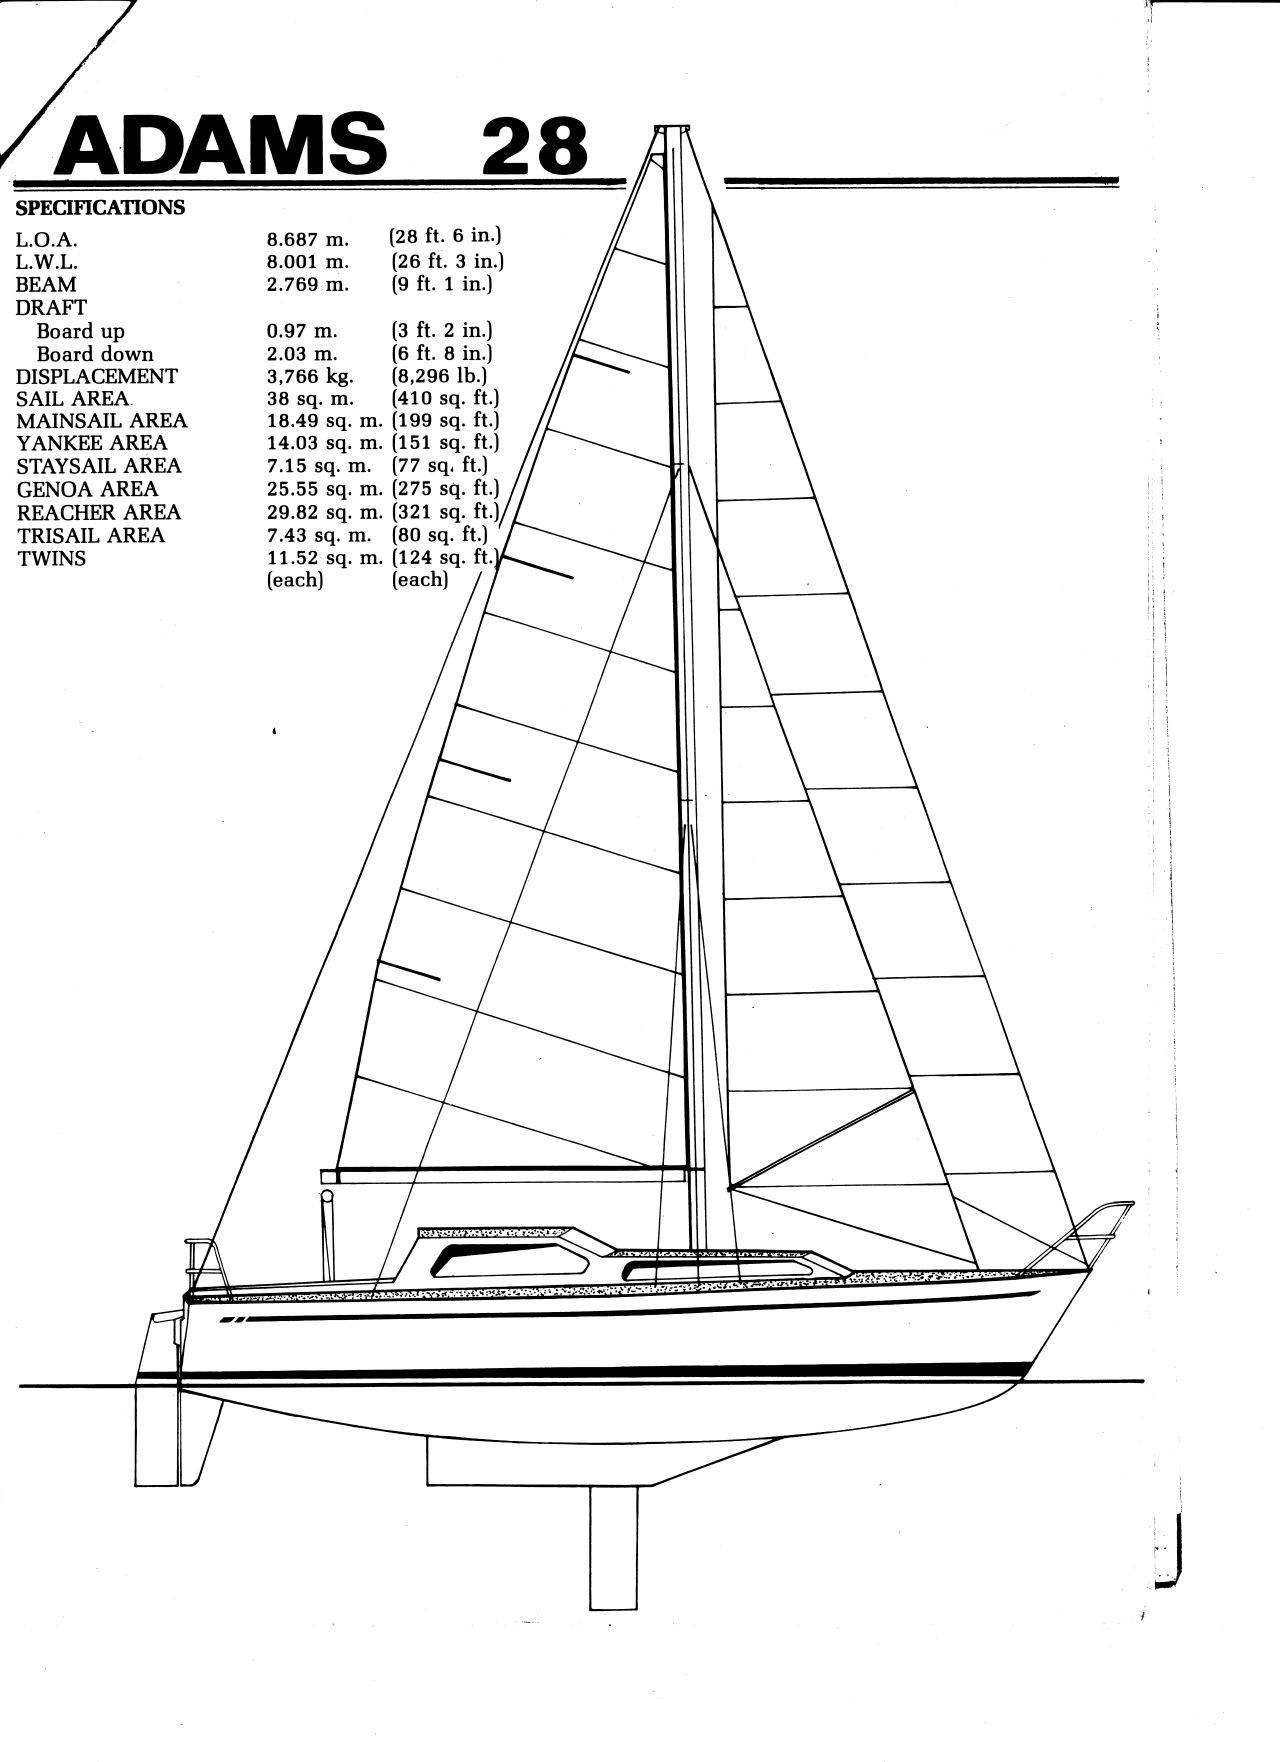 adams 28 yacht